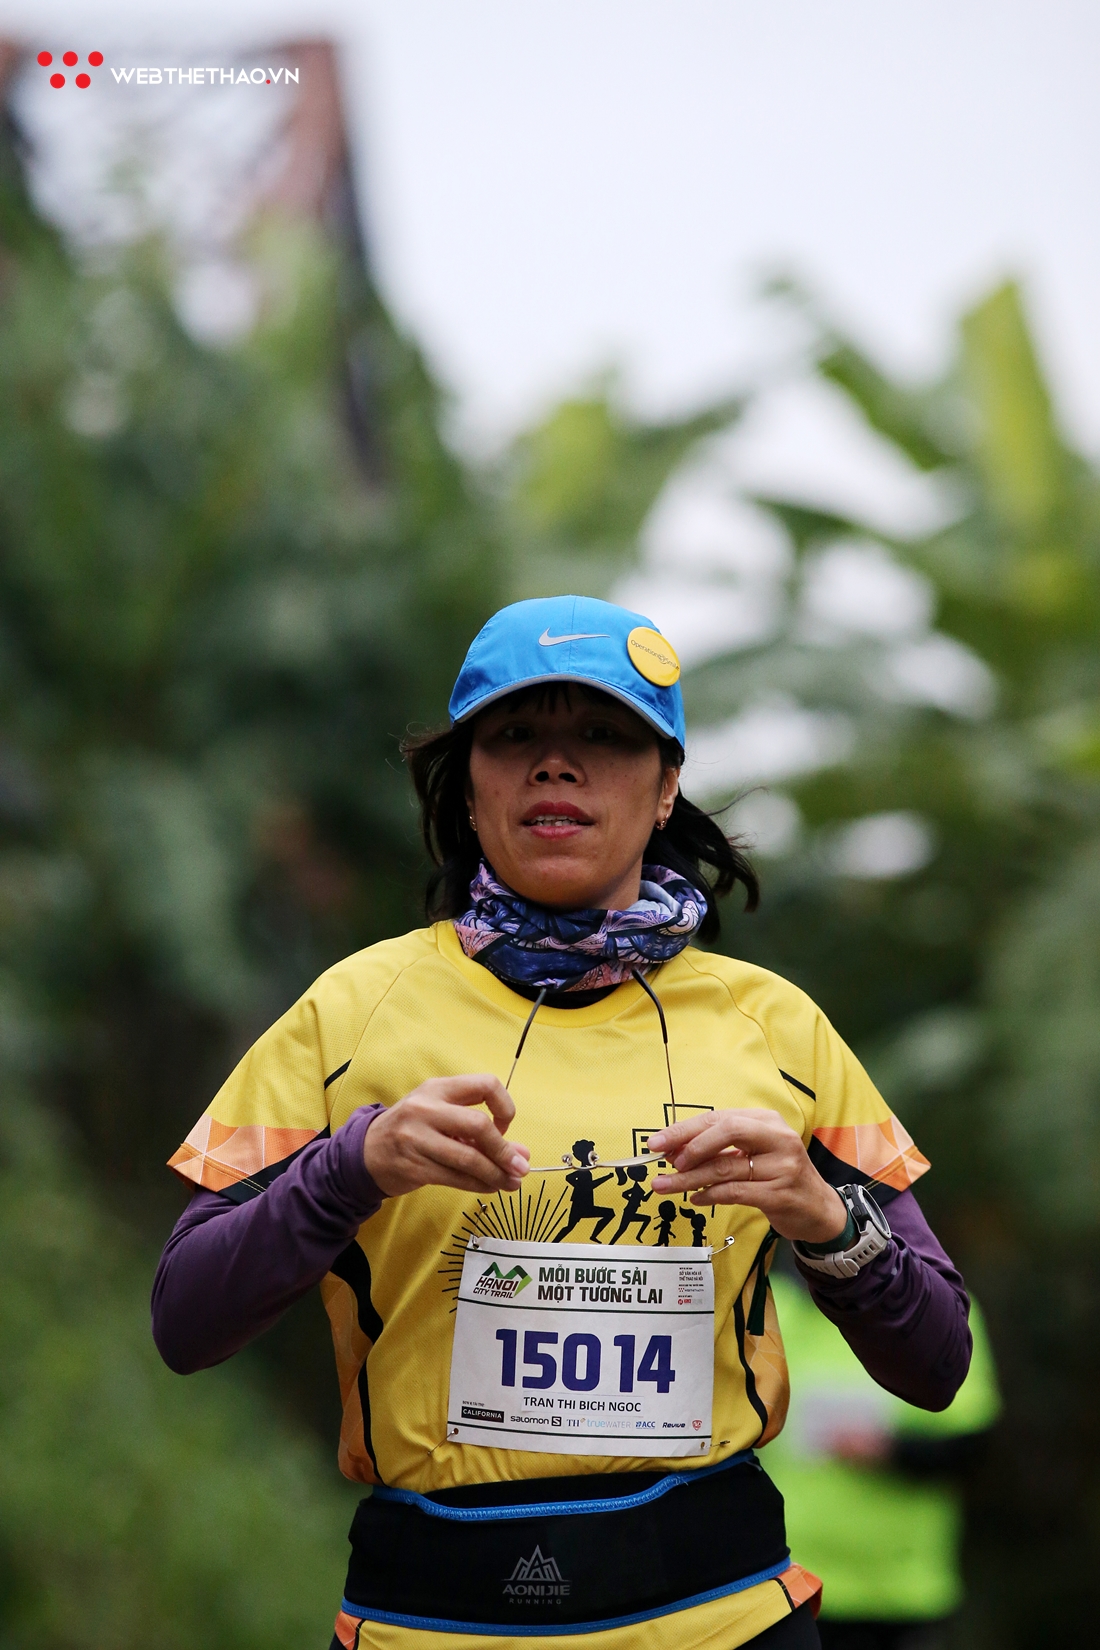 Muôn vàn cách chống rét của runner tại Hanoi City Trail 2019